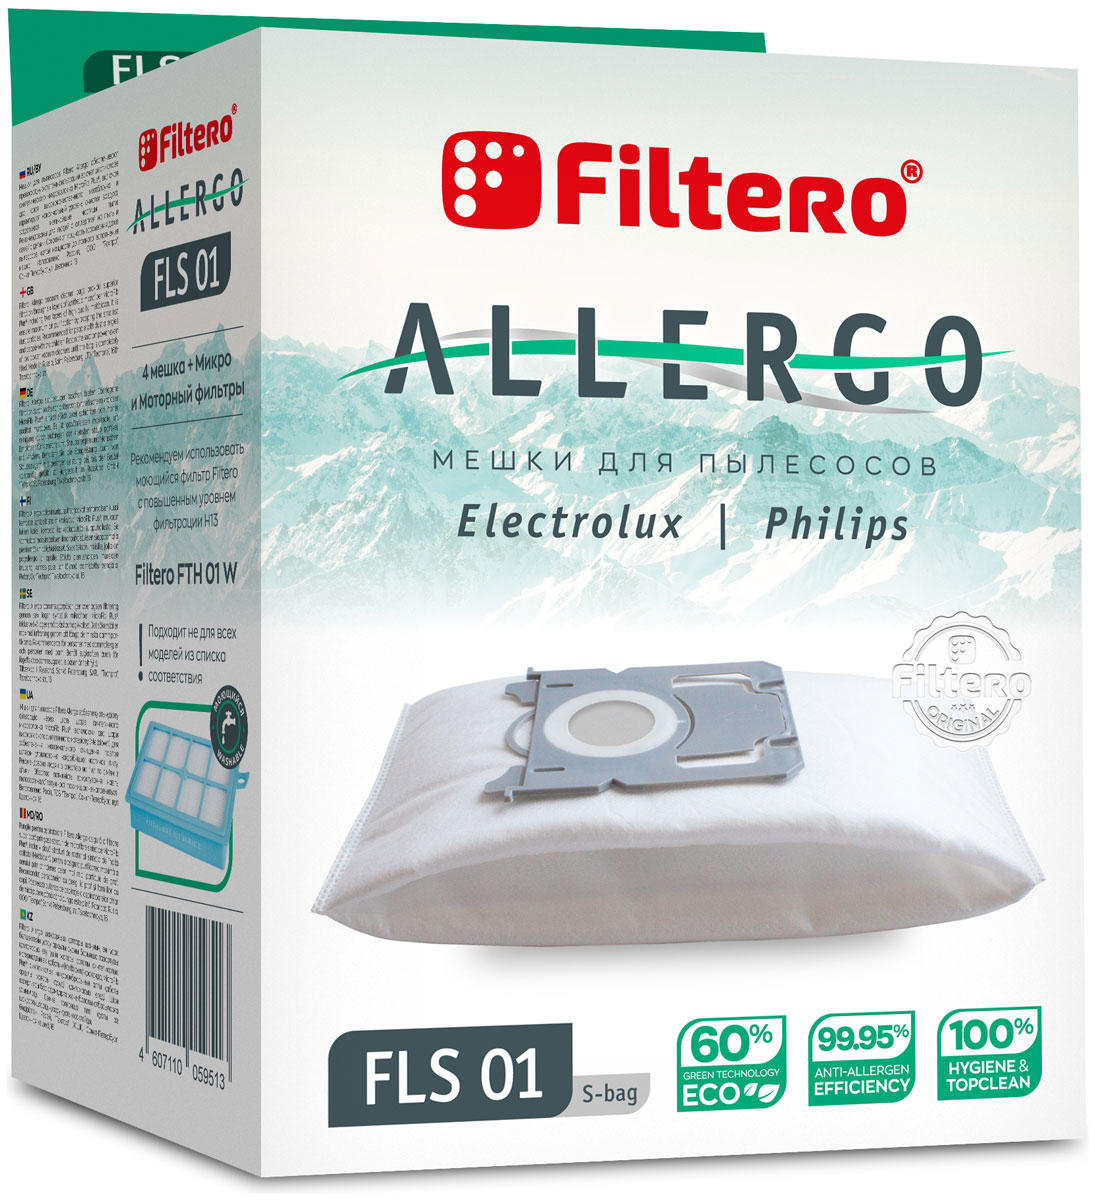 Пылесборники Filtero FLS 01 S-bag Allergo 4 шт. + моторный фильтр и микрофильтр